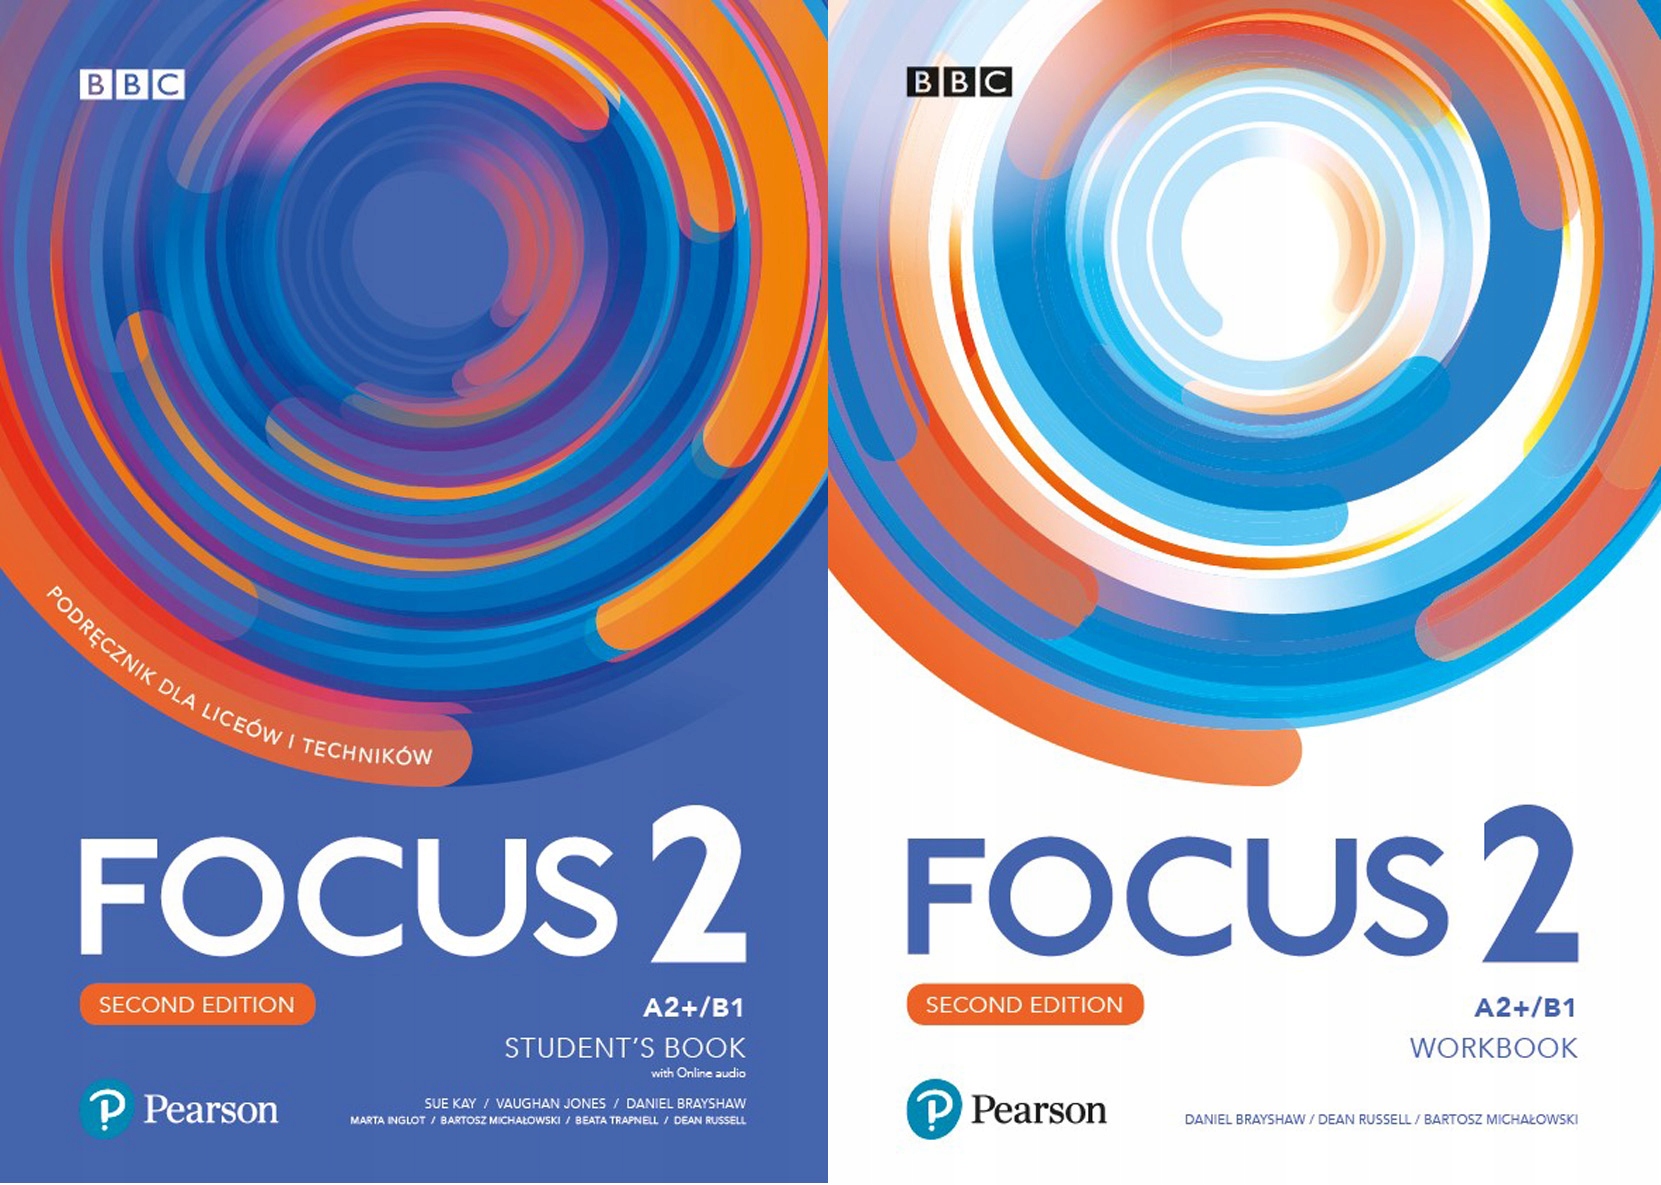 Second 1 ru. Focus 2 Pearson. Focus 2 Workbook 2020. Focus 2 second Edition. Focus 1 second Edition Workbook.